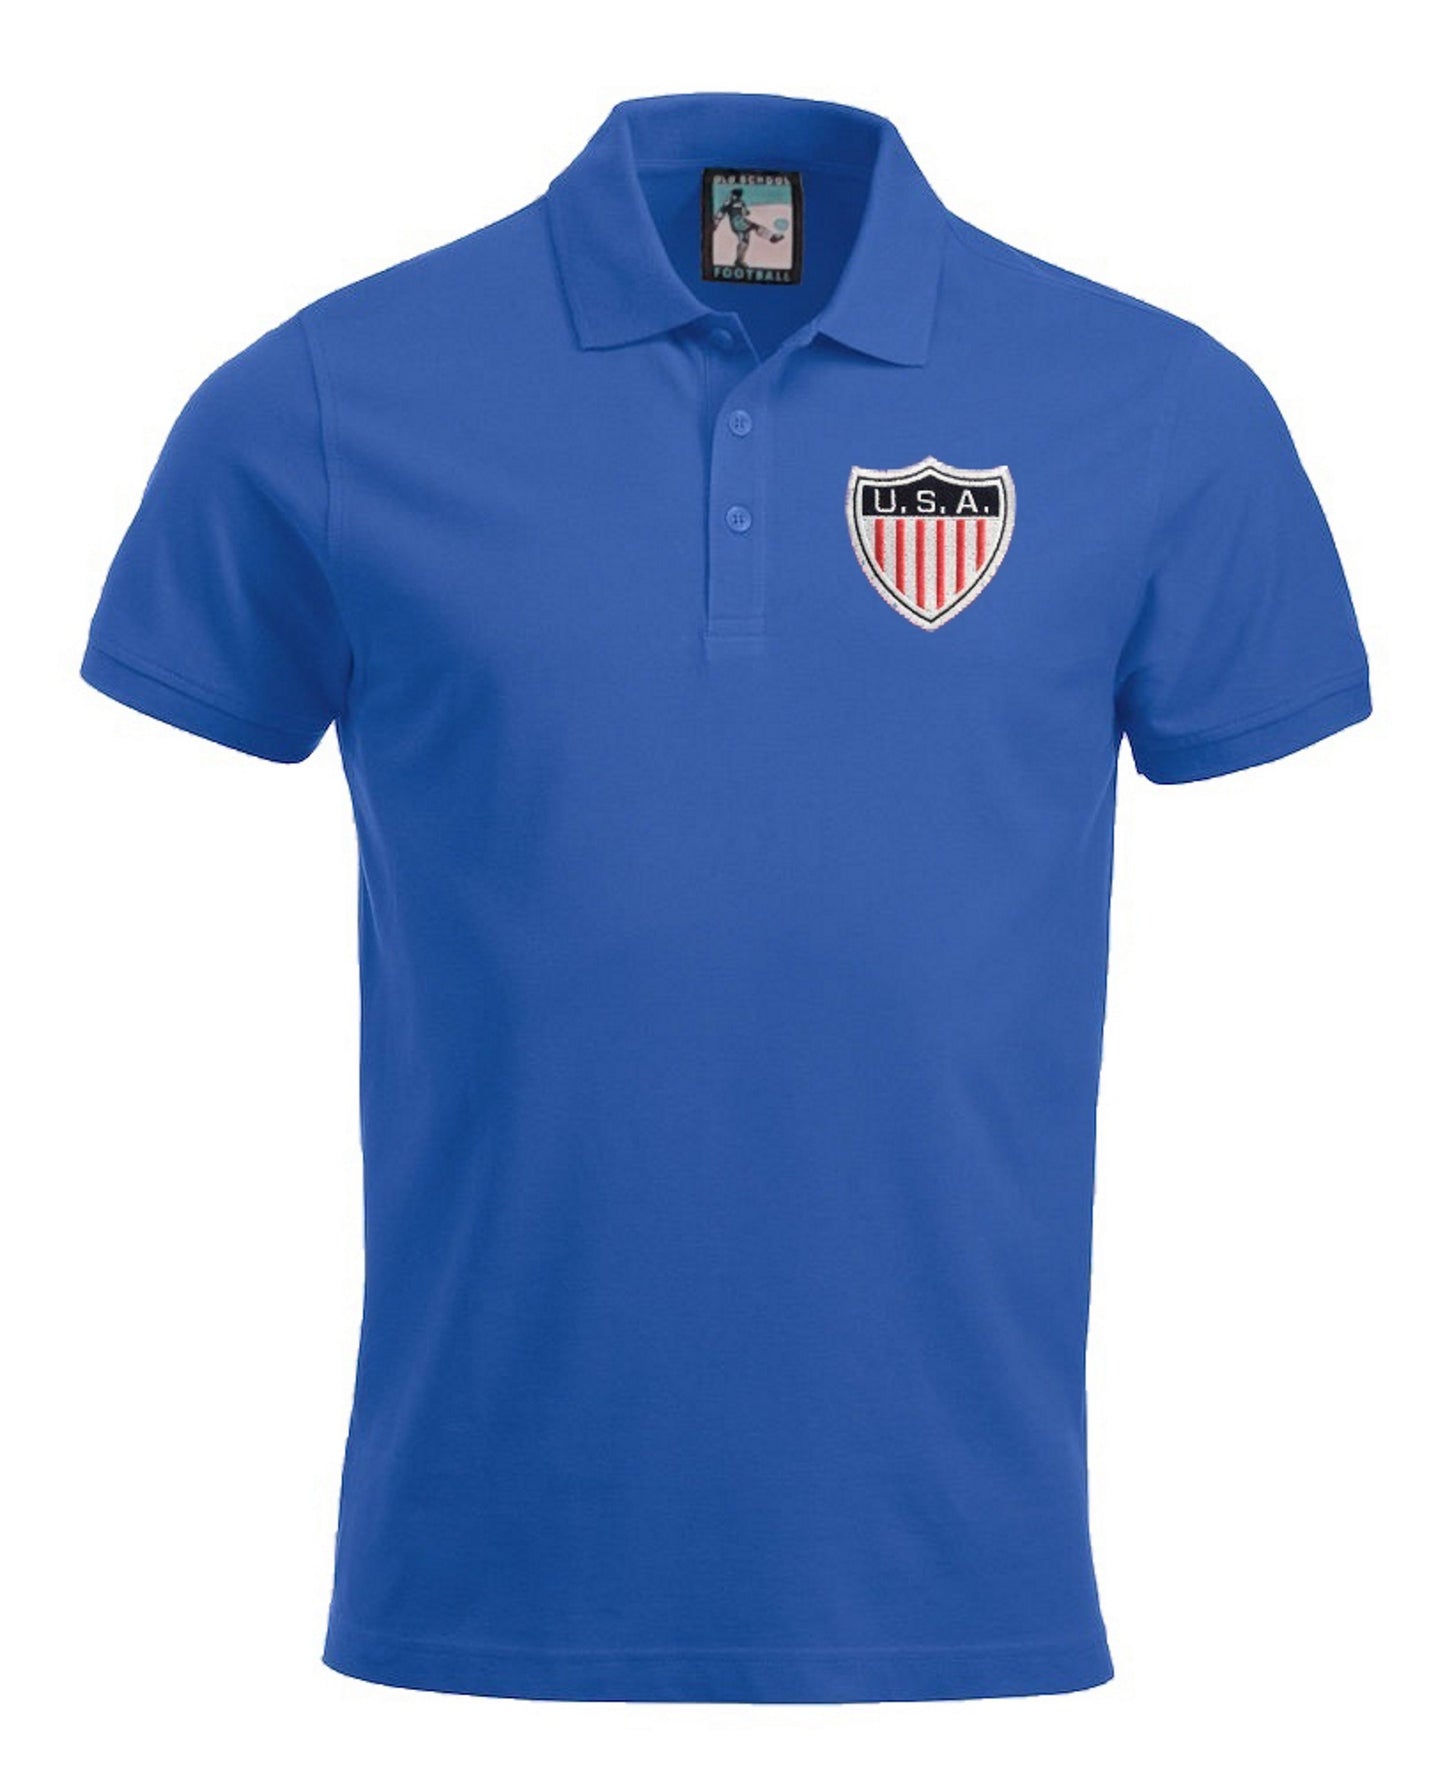 USA Retro Football Polo Shirt - Polo